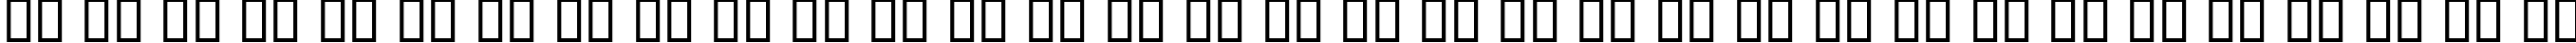 Пример написания русского алфавита шрифтом B Homa